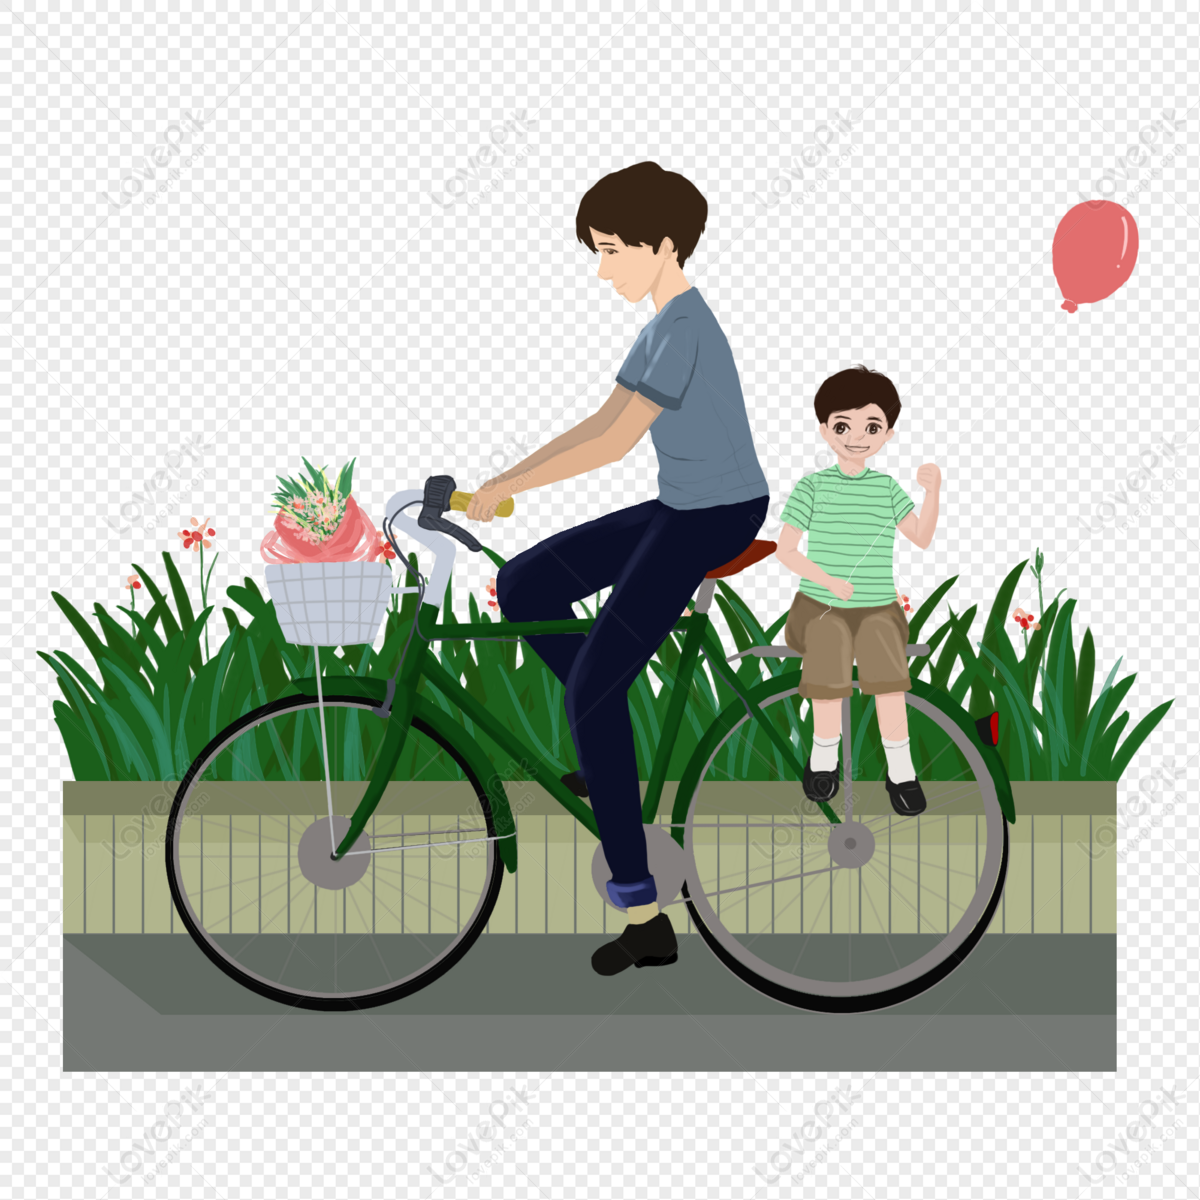 Nhìn thấy hình ảnh cha đi xe đạp, bạn sẽ cảm nhận được tình thân gia đình trong khoảnh khắc giản đơn đó. Cha tuy không chỉ là người bảo vệ bạn, mà còn là người đồng hành cùng bạn trên mọi nẻo đường đời. Hãy xem hình ảnh này để cảm nhận tình cảm đong đầy của cha dành cho con!